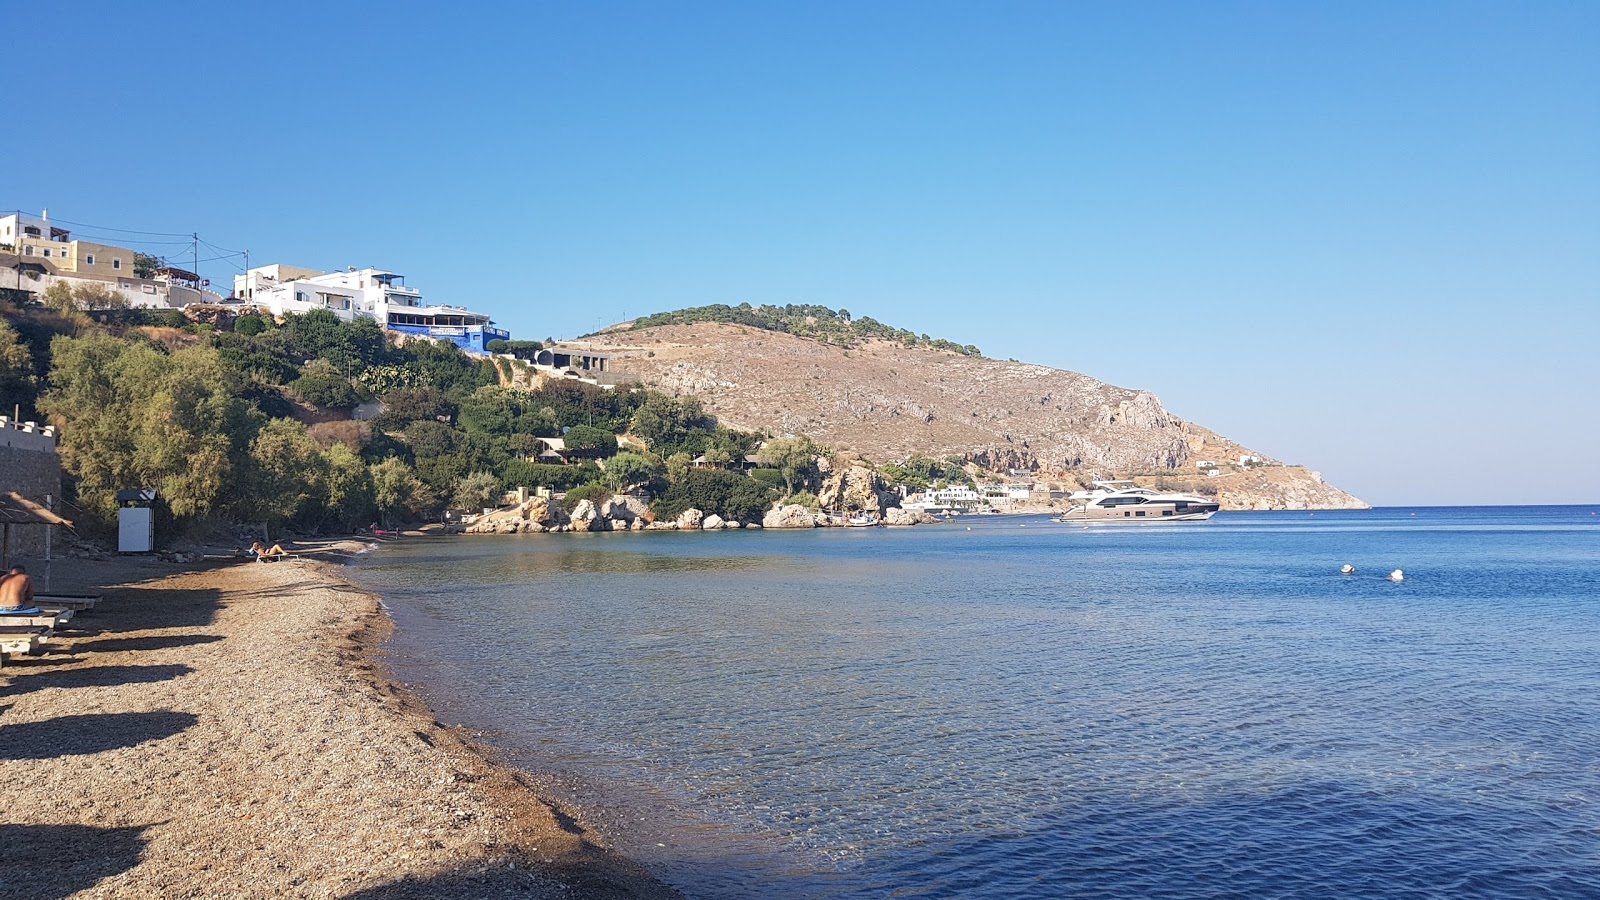 Vromolithos beach'in fotoğrafı gri ince çakıl taş yüzey ile